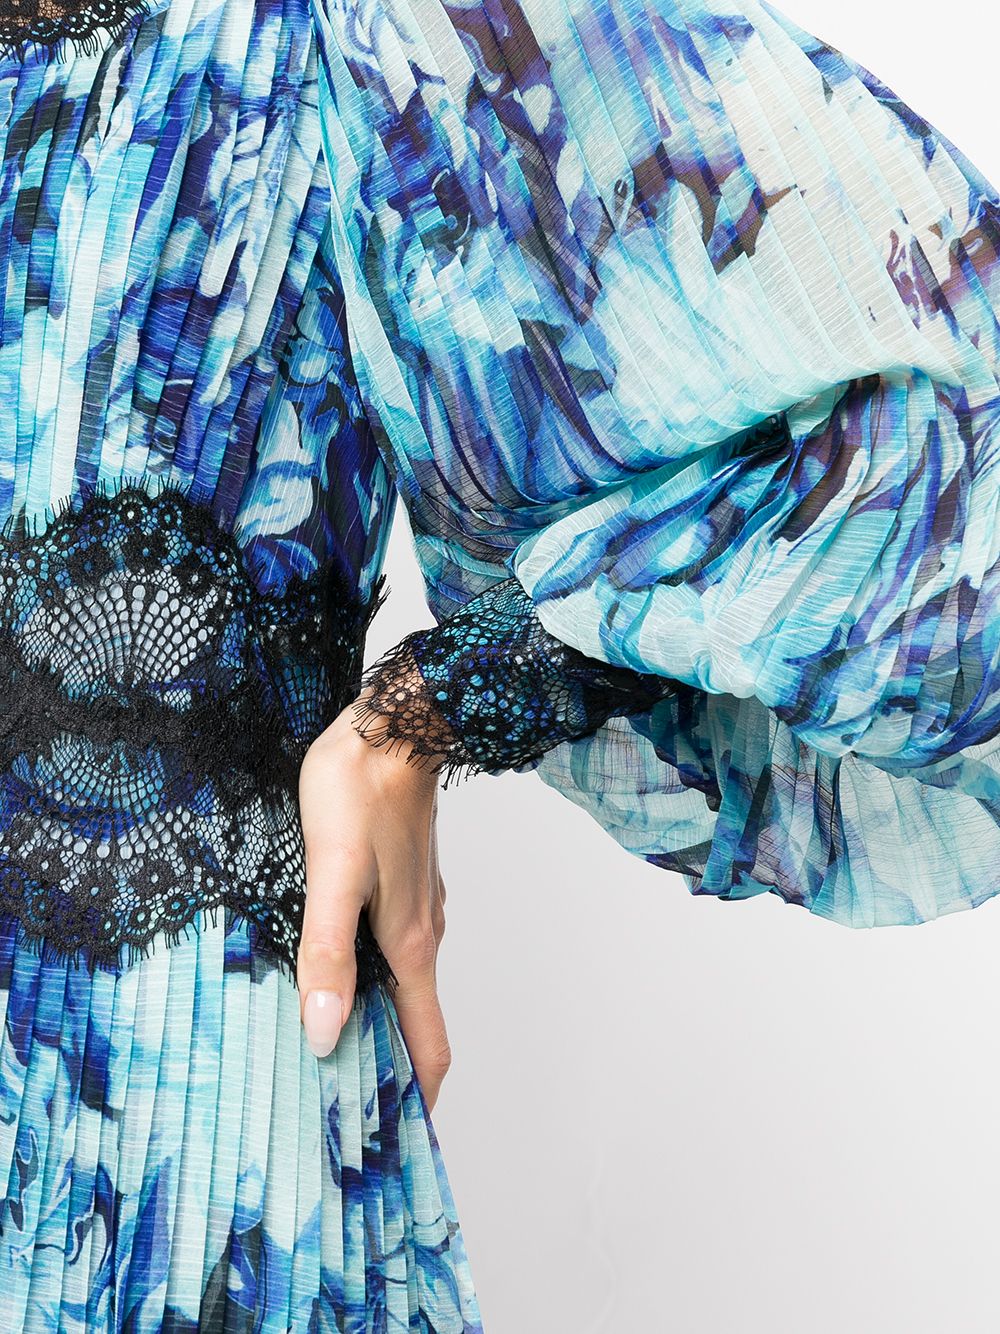 Lace-Detail Floral-Print Midi Dress